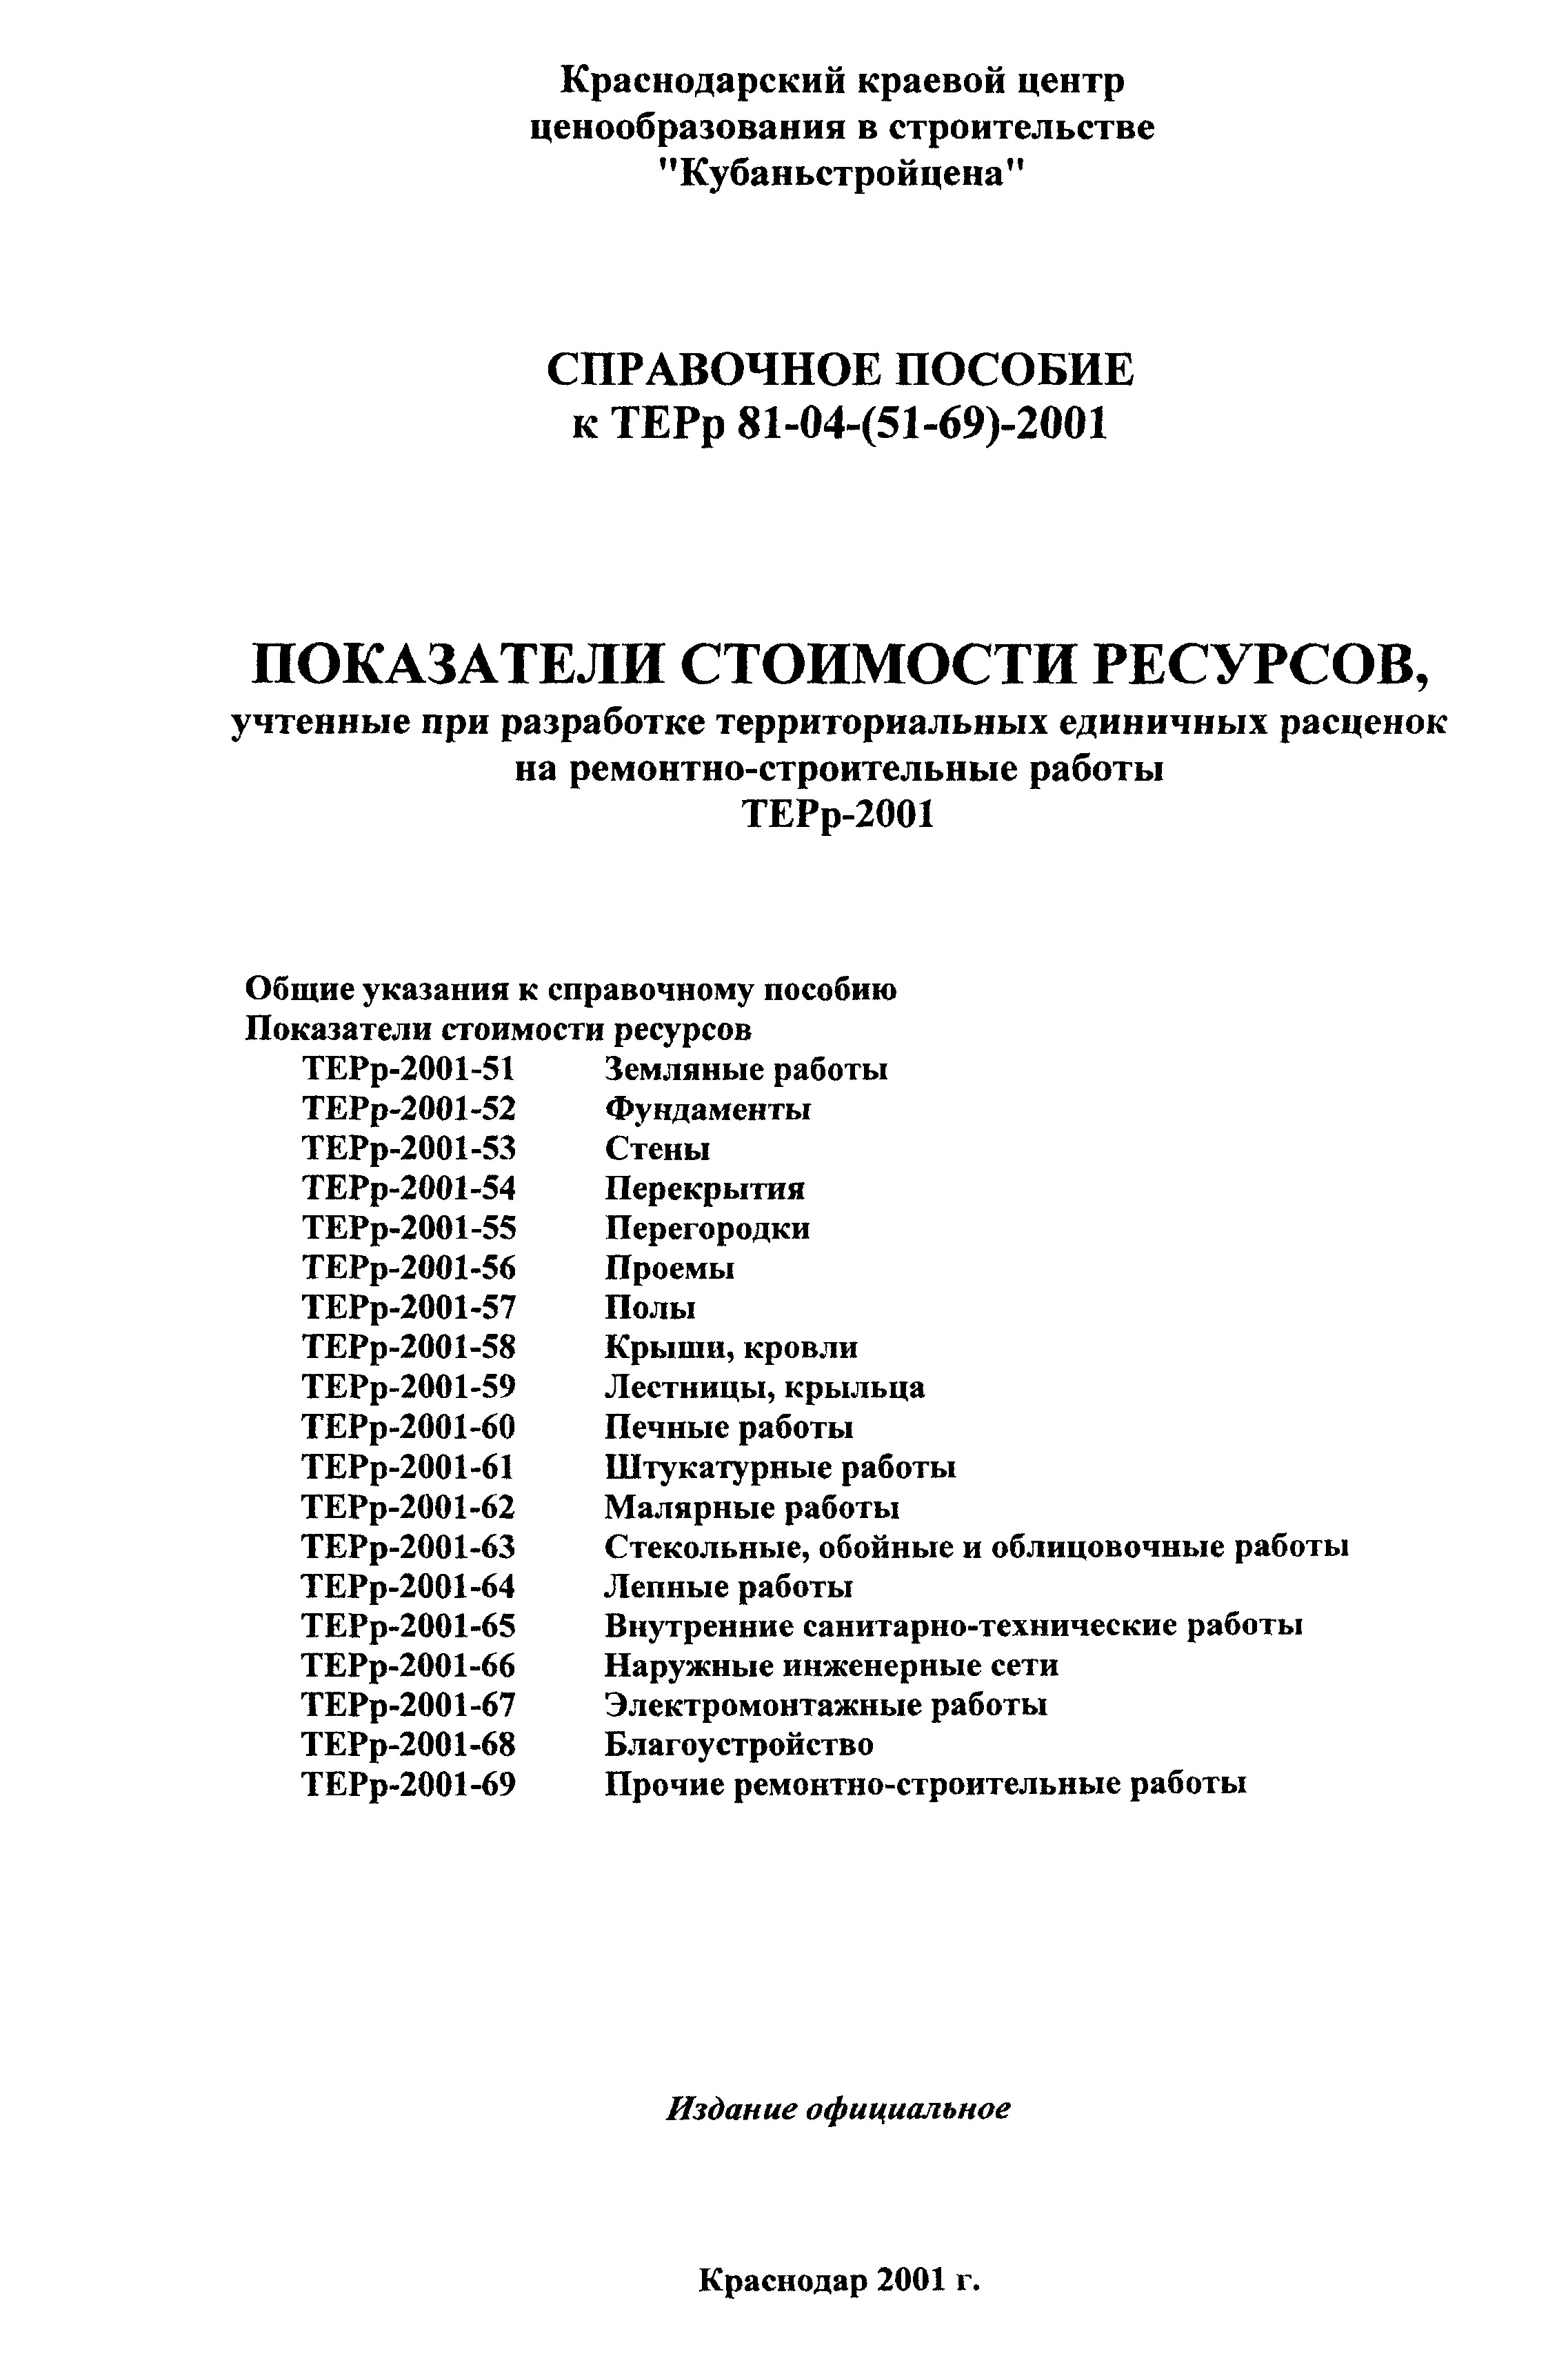 Справочное пособие к ТЕРр 81-04-(51-69)-2001